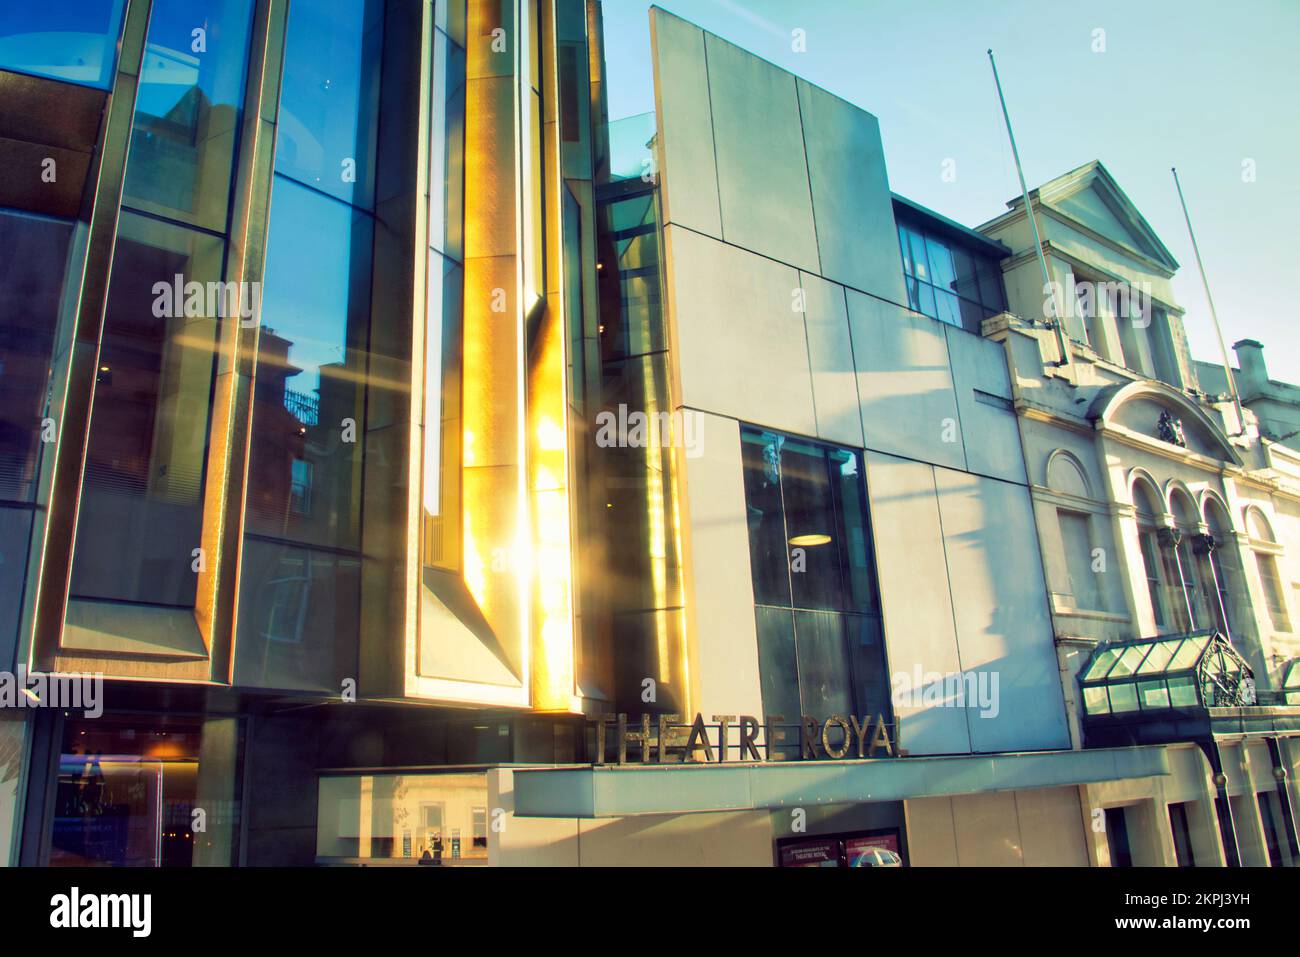 Theater Royal Fassade Glasgow Schild Stockfoto